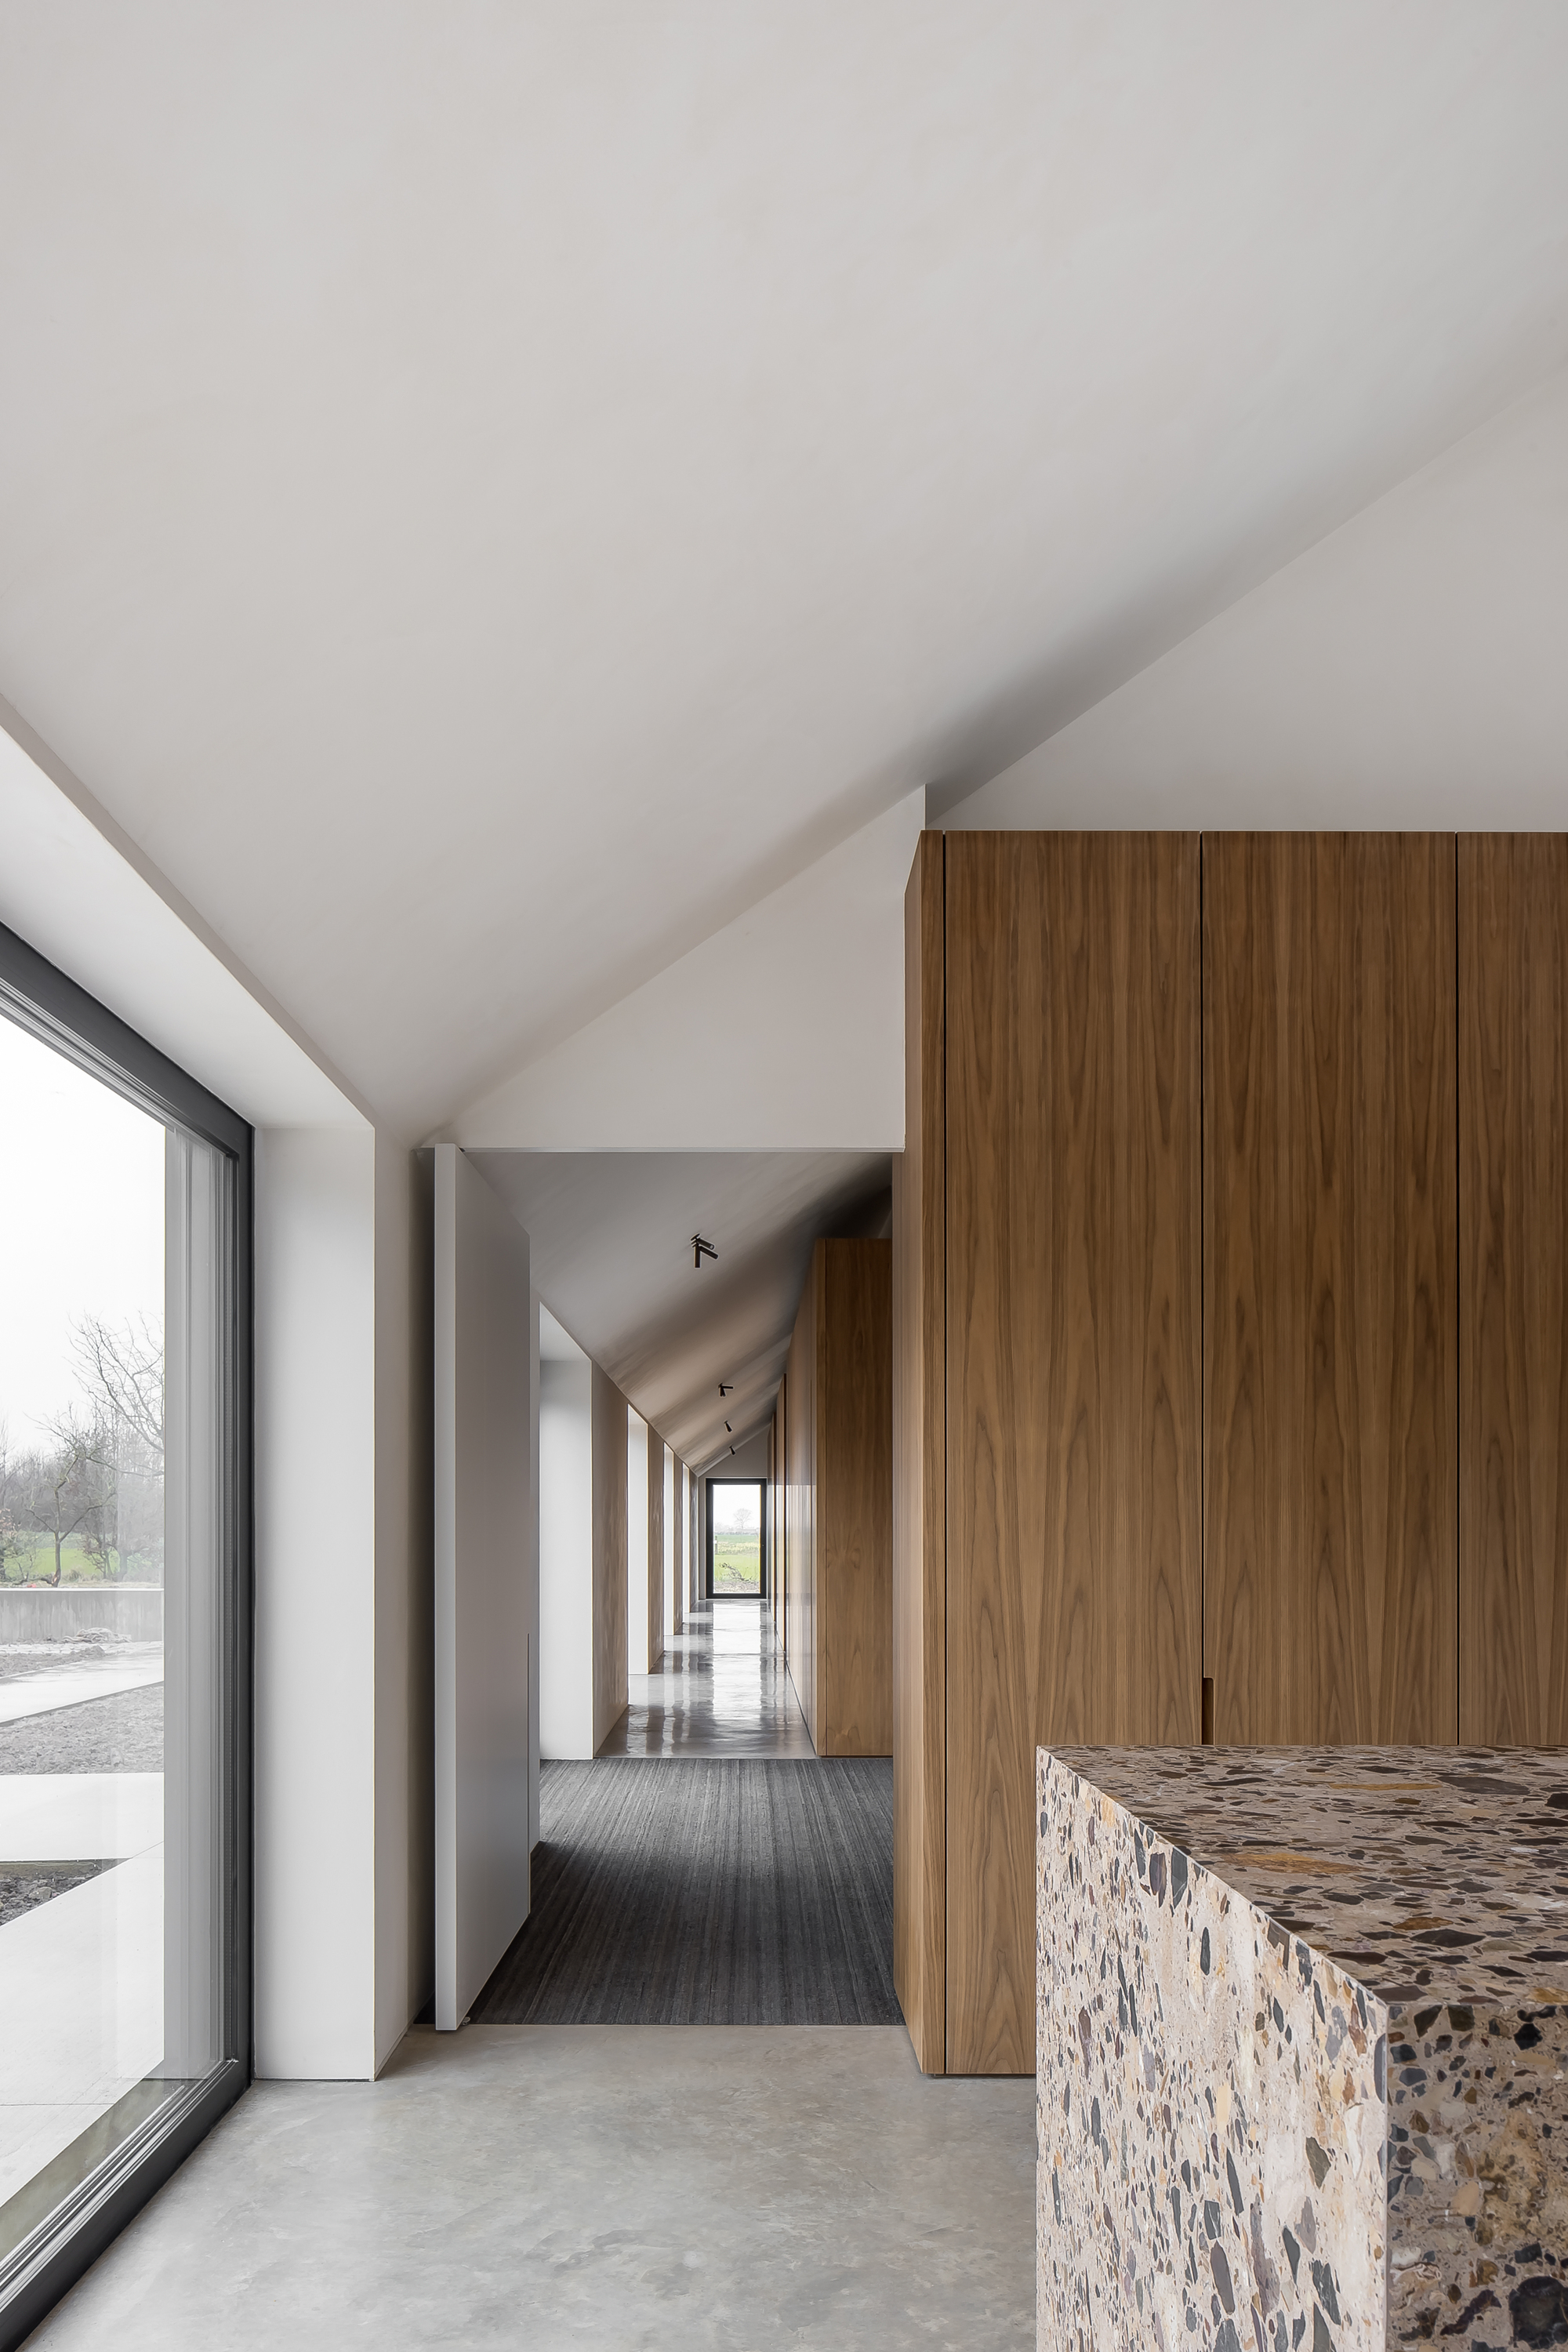 图片[2]|Moróro 户外概念公司新总部 / Minus Interior Architects|ART-Arrakis | 建筑室内设计的创新与灵感